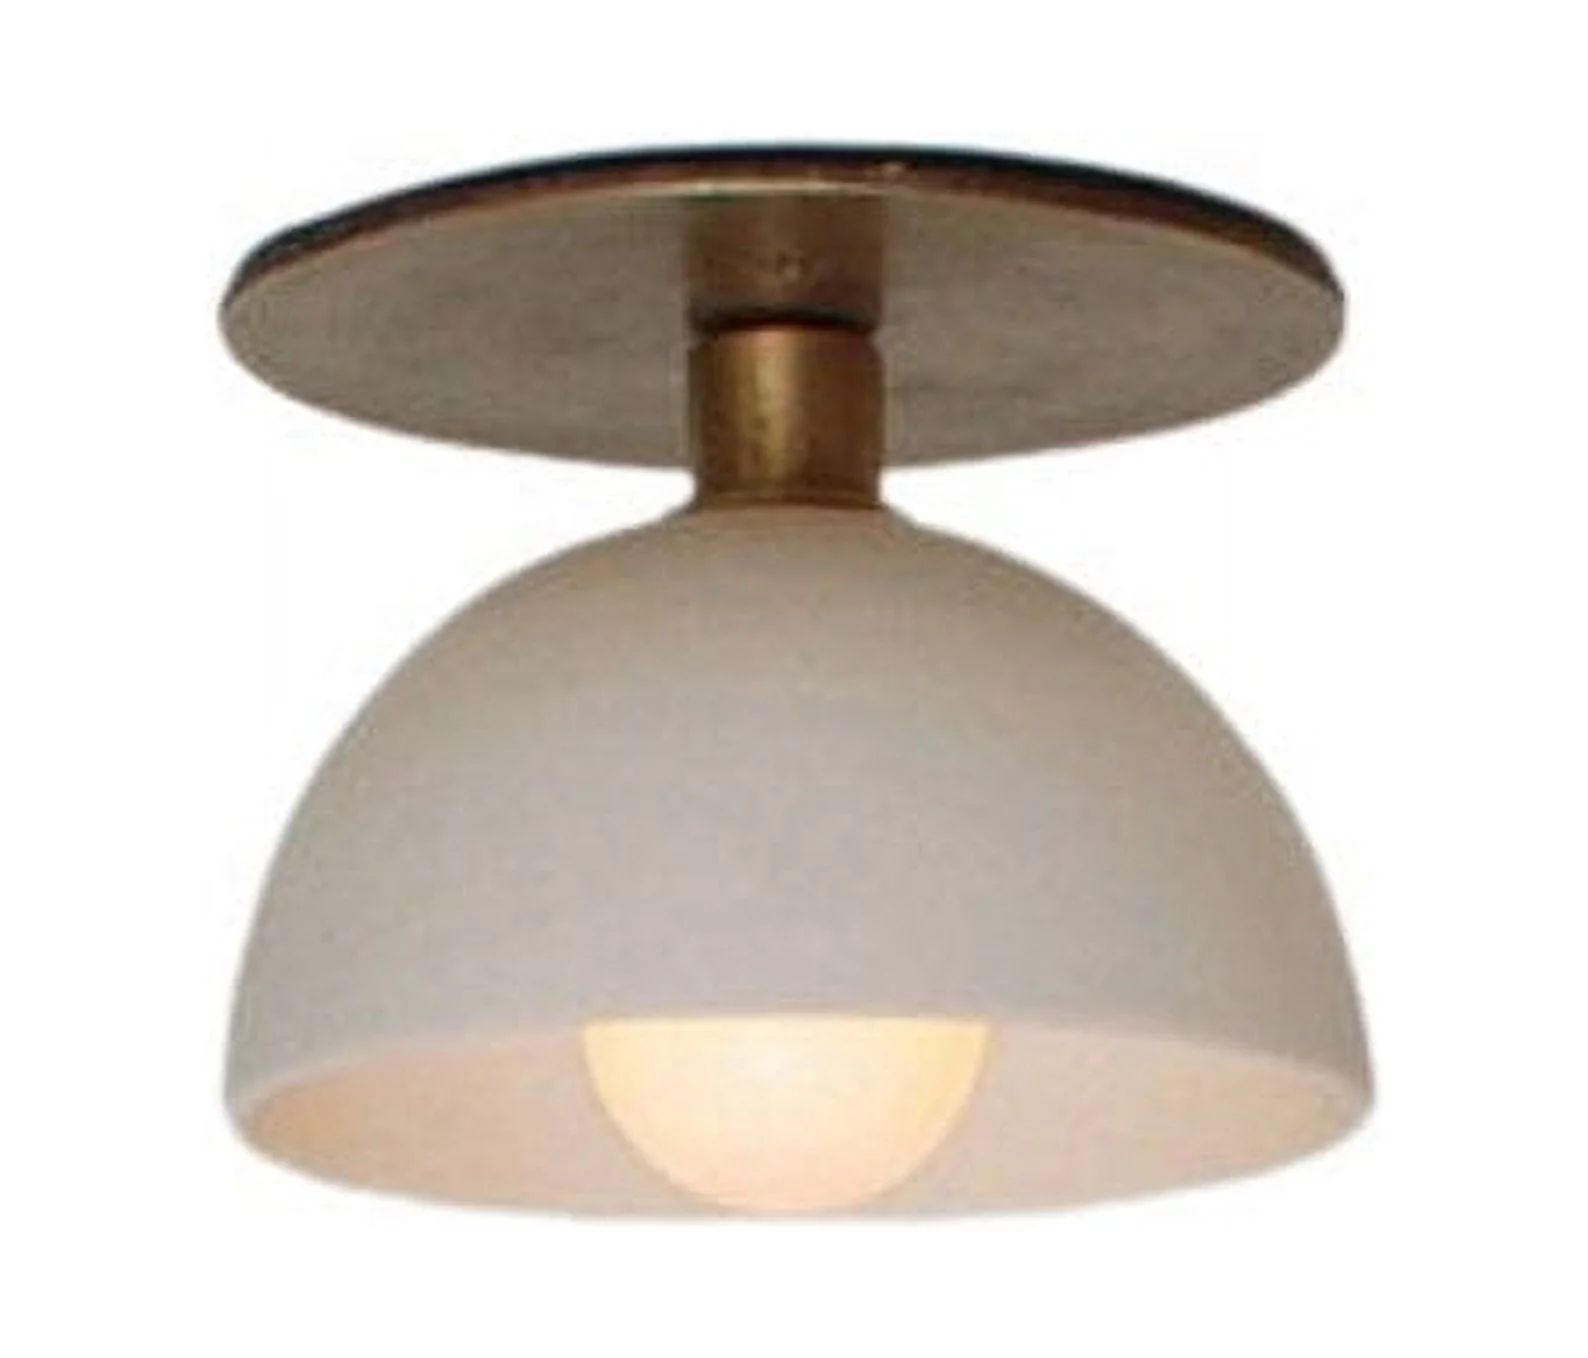 1 light Wall Light Modern Raw Brass Sputnik chandelier light Fixture | Walmart (US)